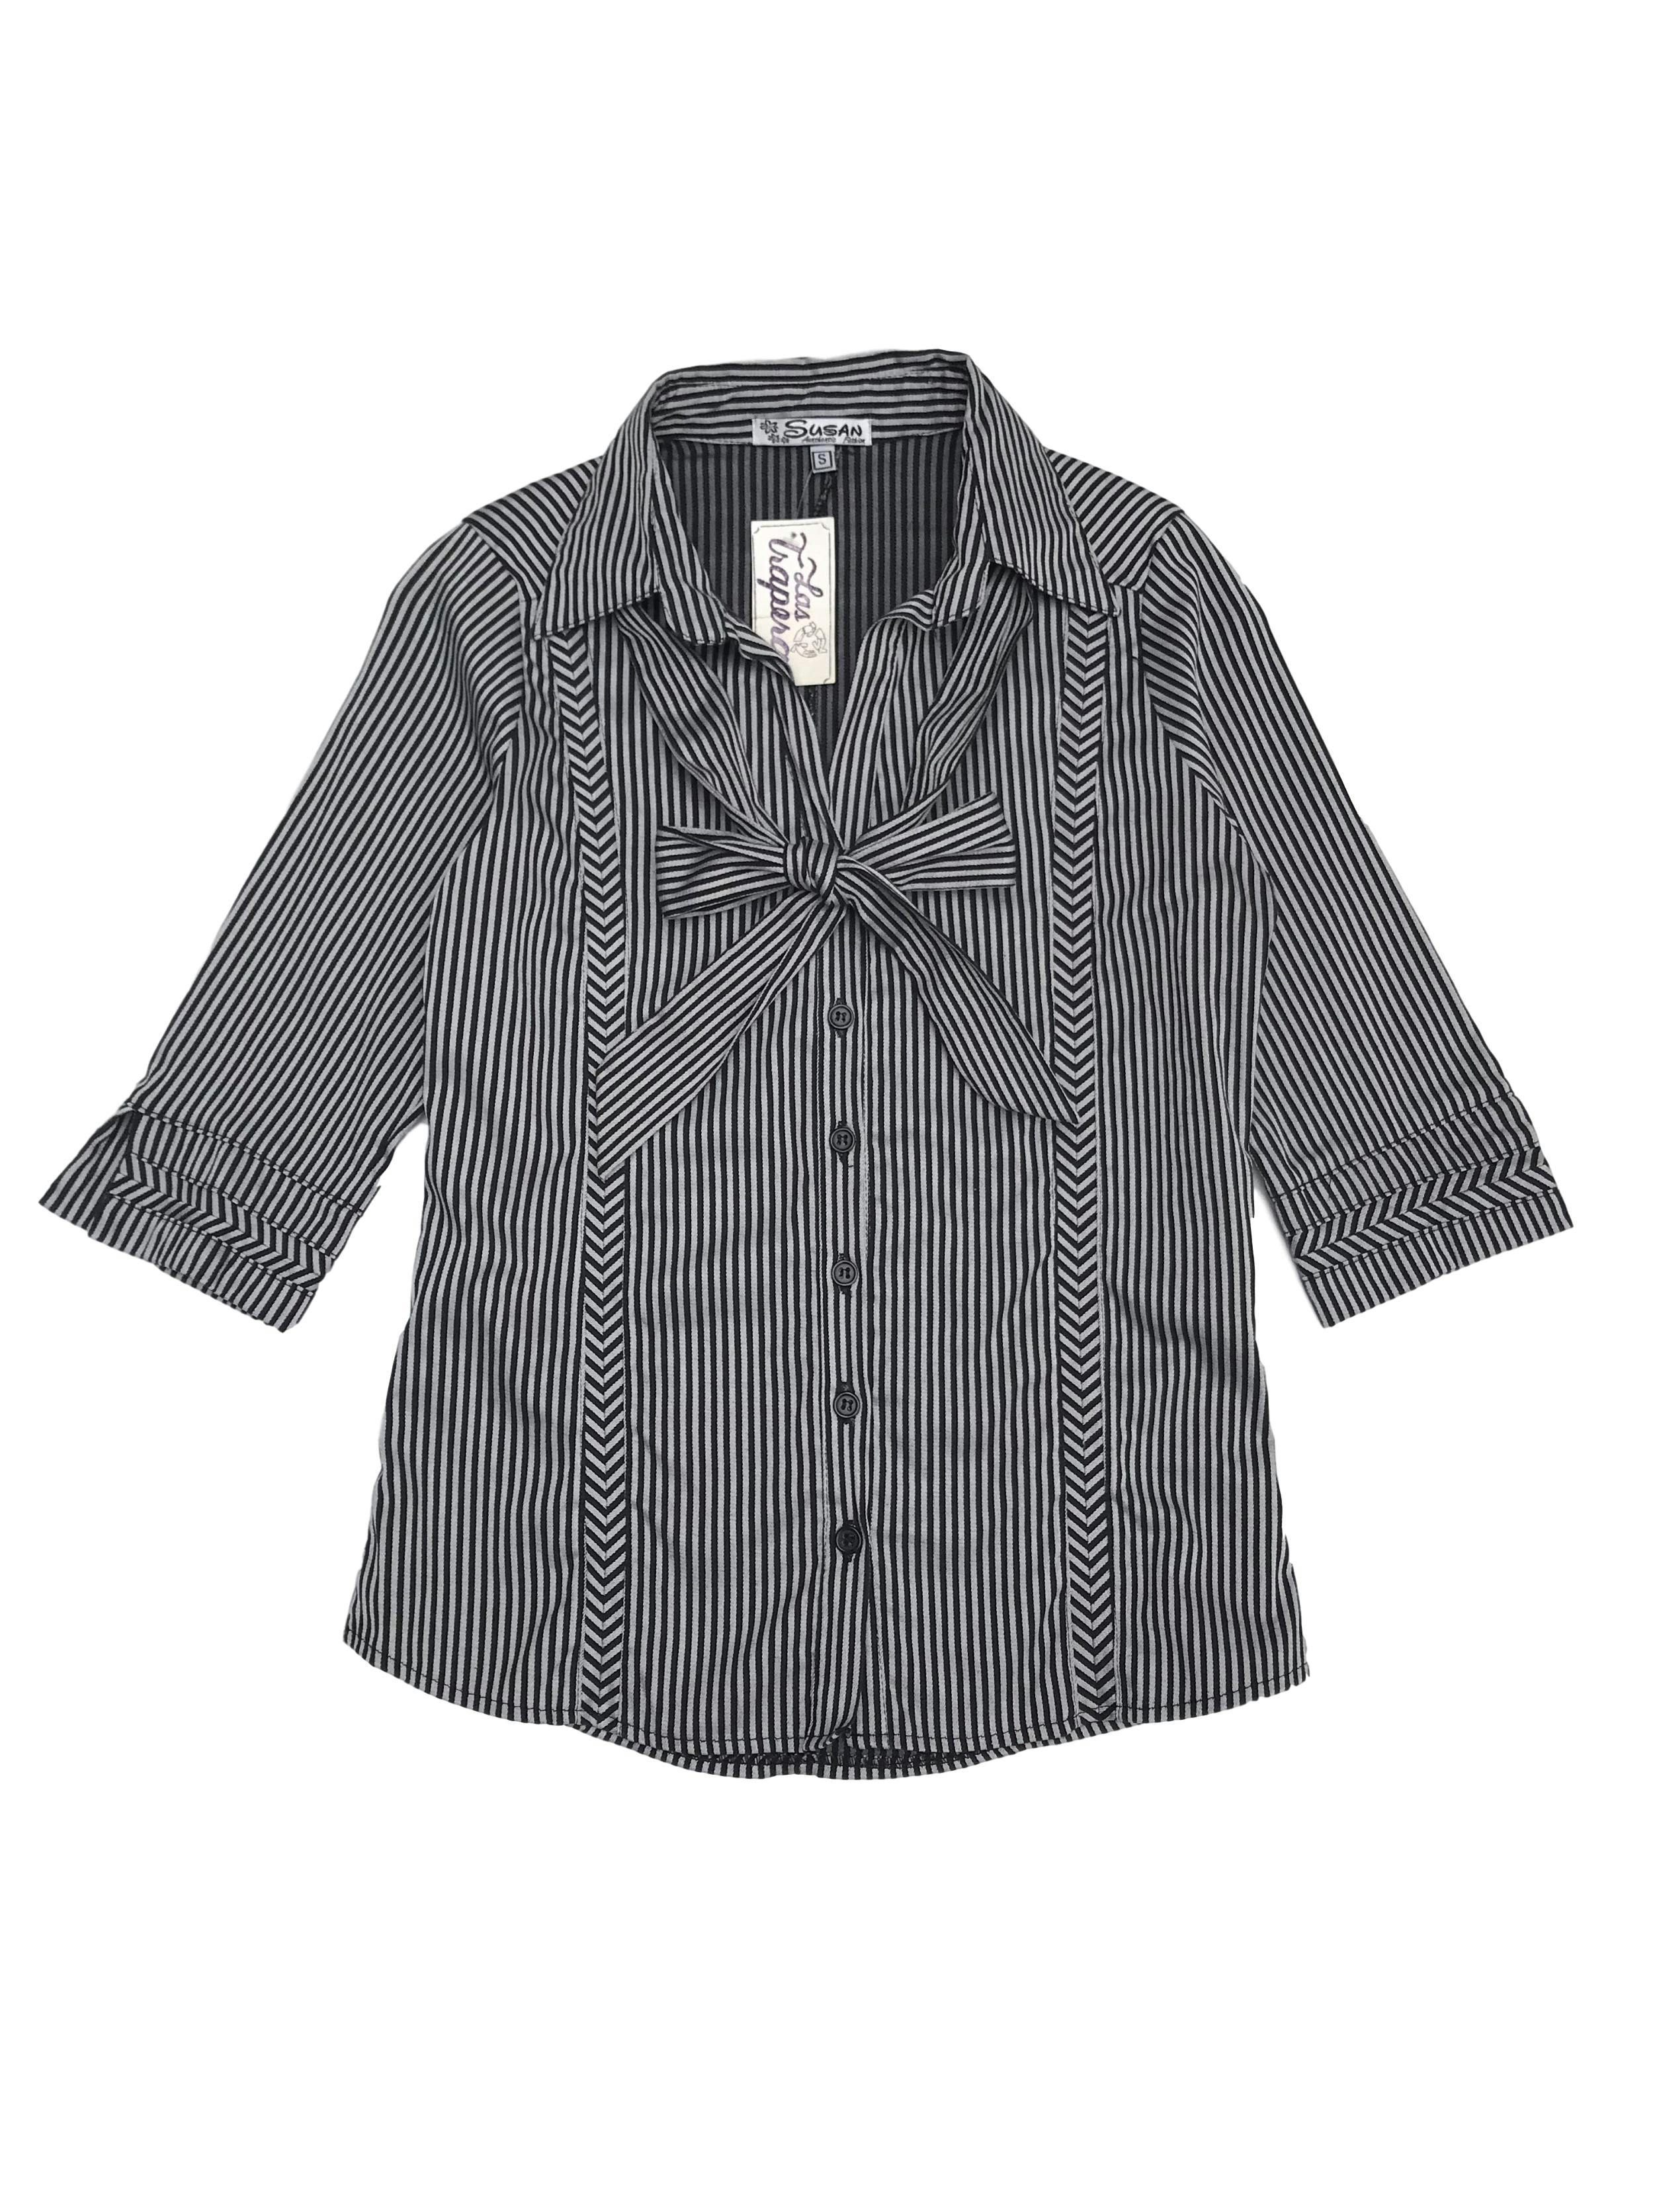 Blusa a rayas plomas y negras, pinzas delante y atrás, manga 3/4, con lazo extra para el cuello (se puede usar sin él)